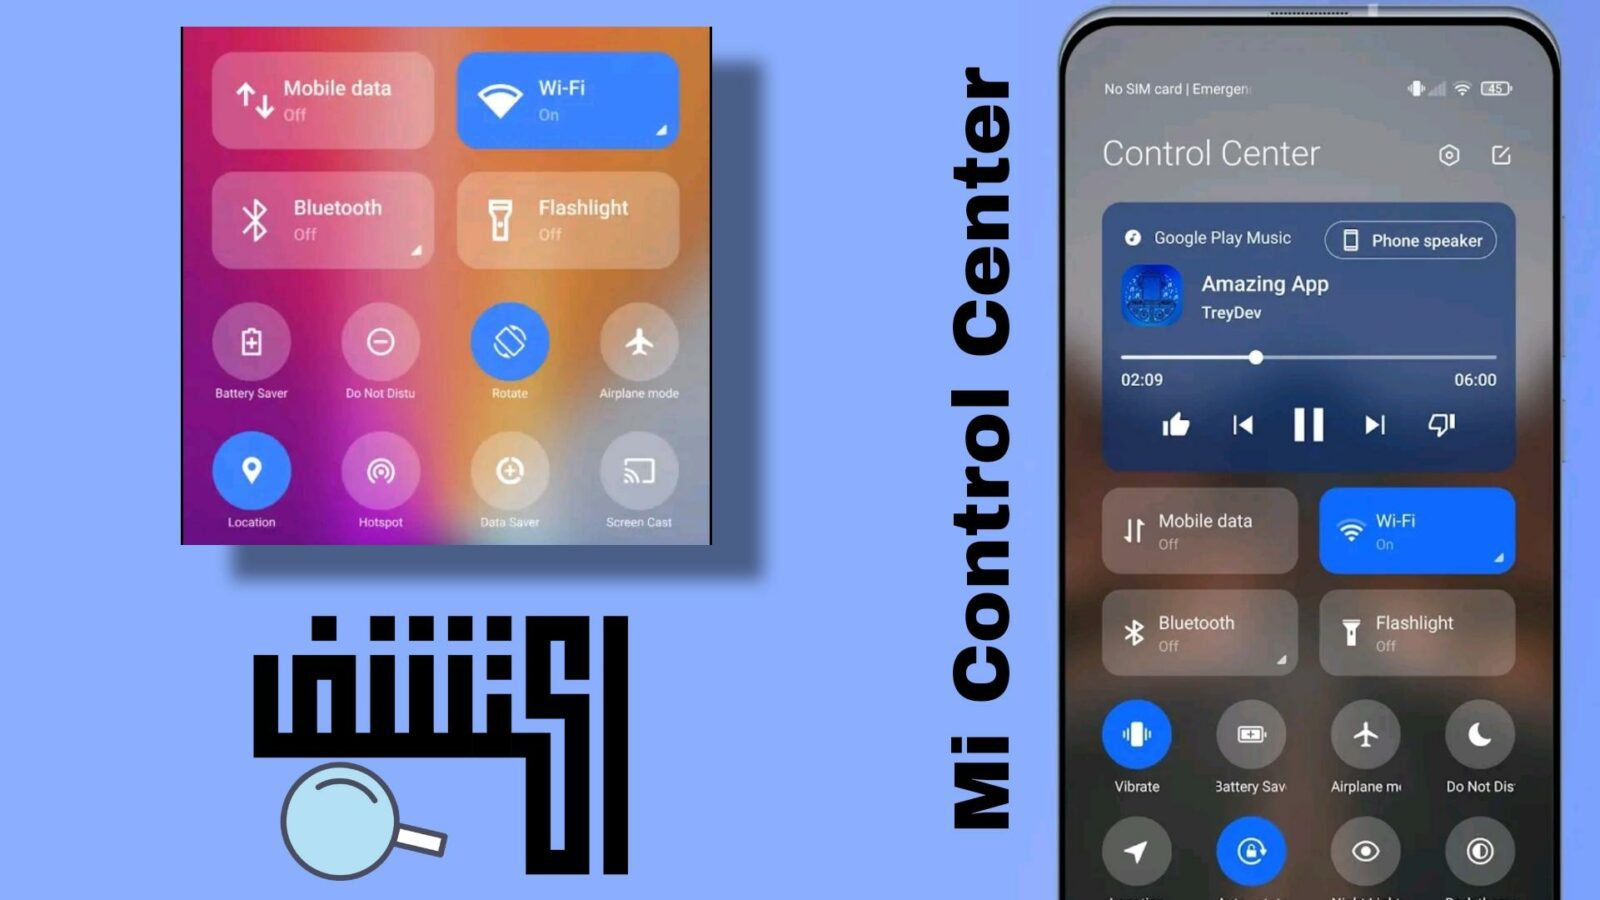 تطبيق Mi Control Center لتخصيص وتغيير قائمة الإشعارات للموبايل